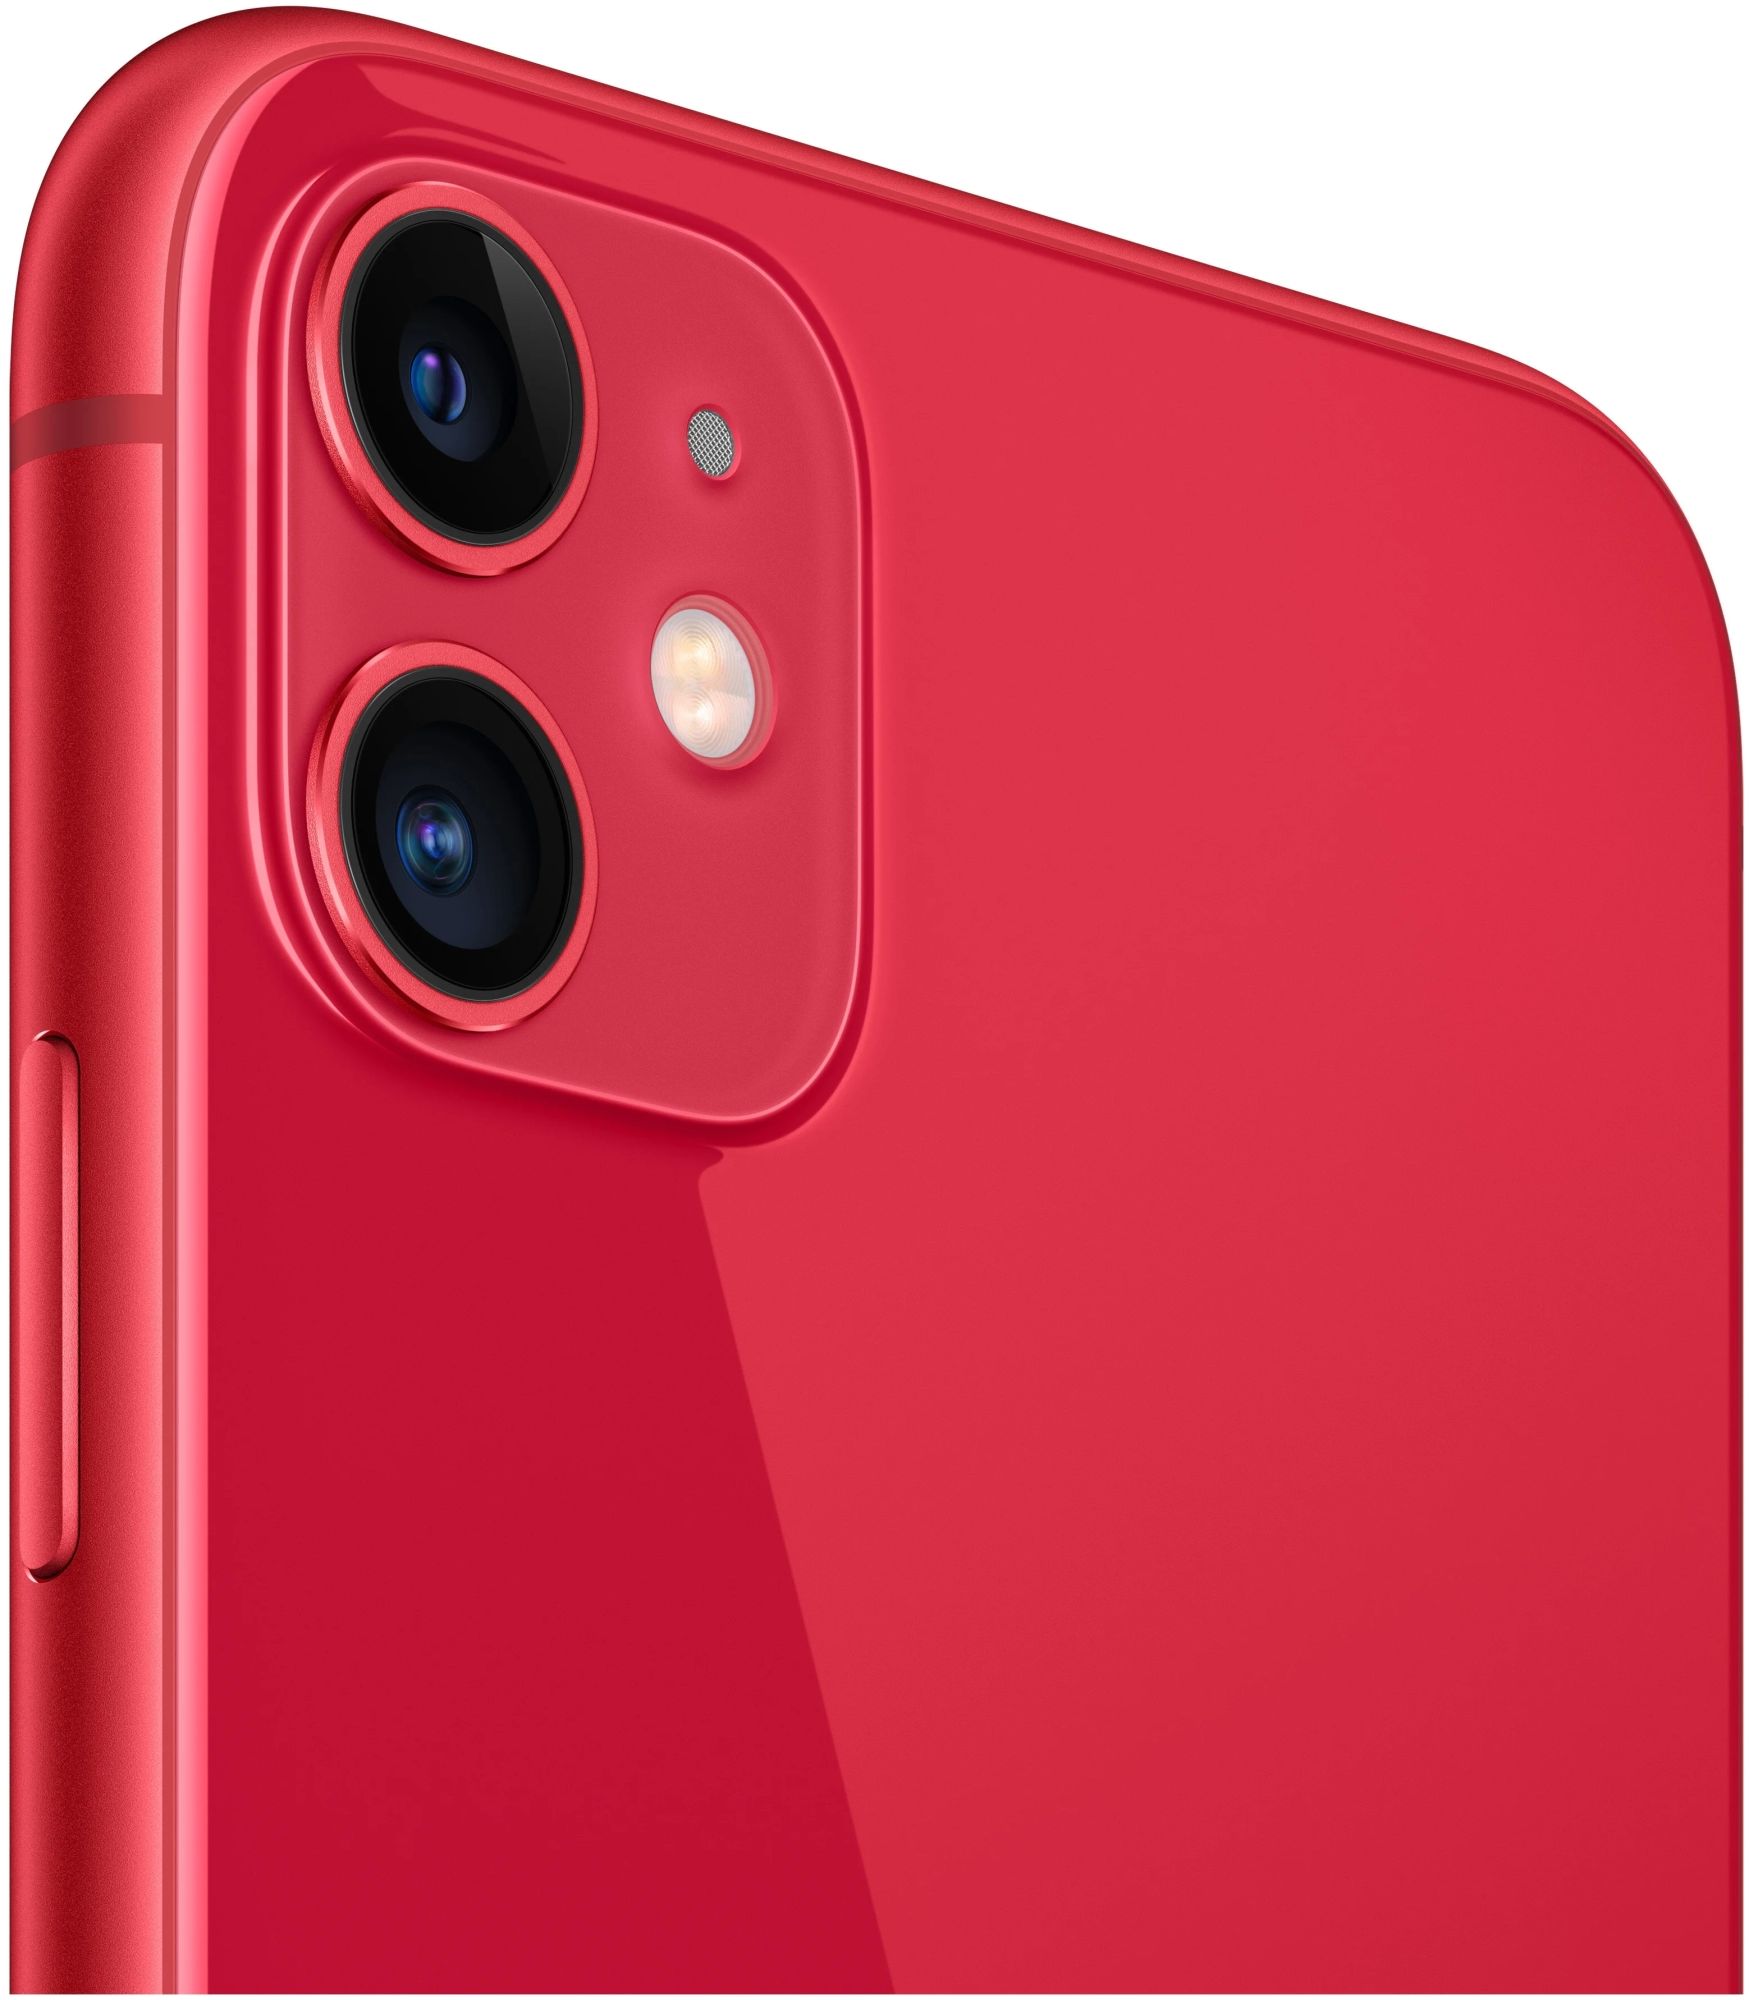 Смартфон Apple iPhone 11 64 ГБ Красный (RU) в Челябинске купить по недорогим ценам с доставкой